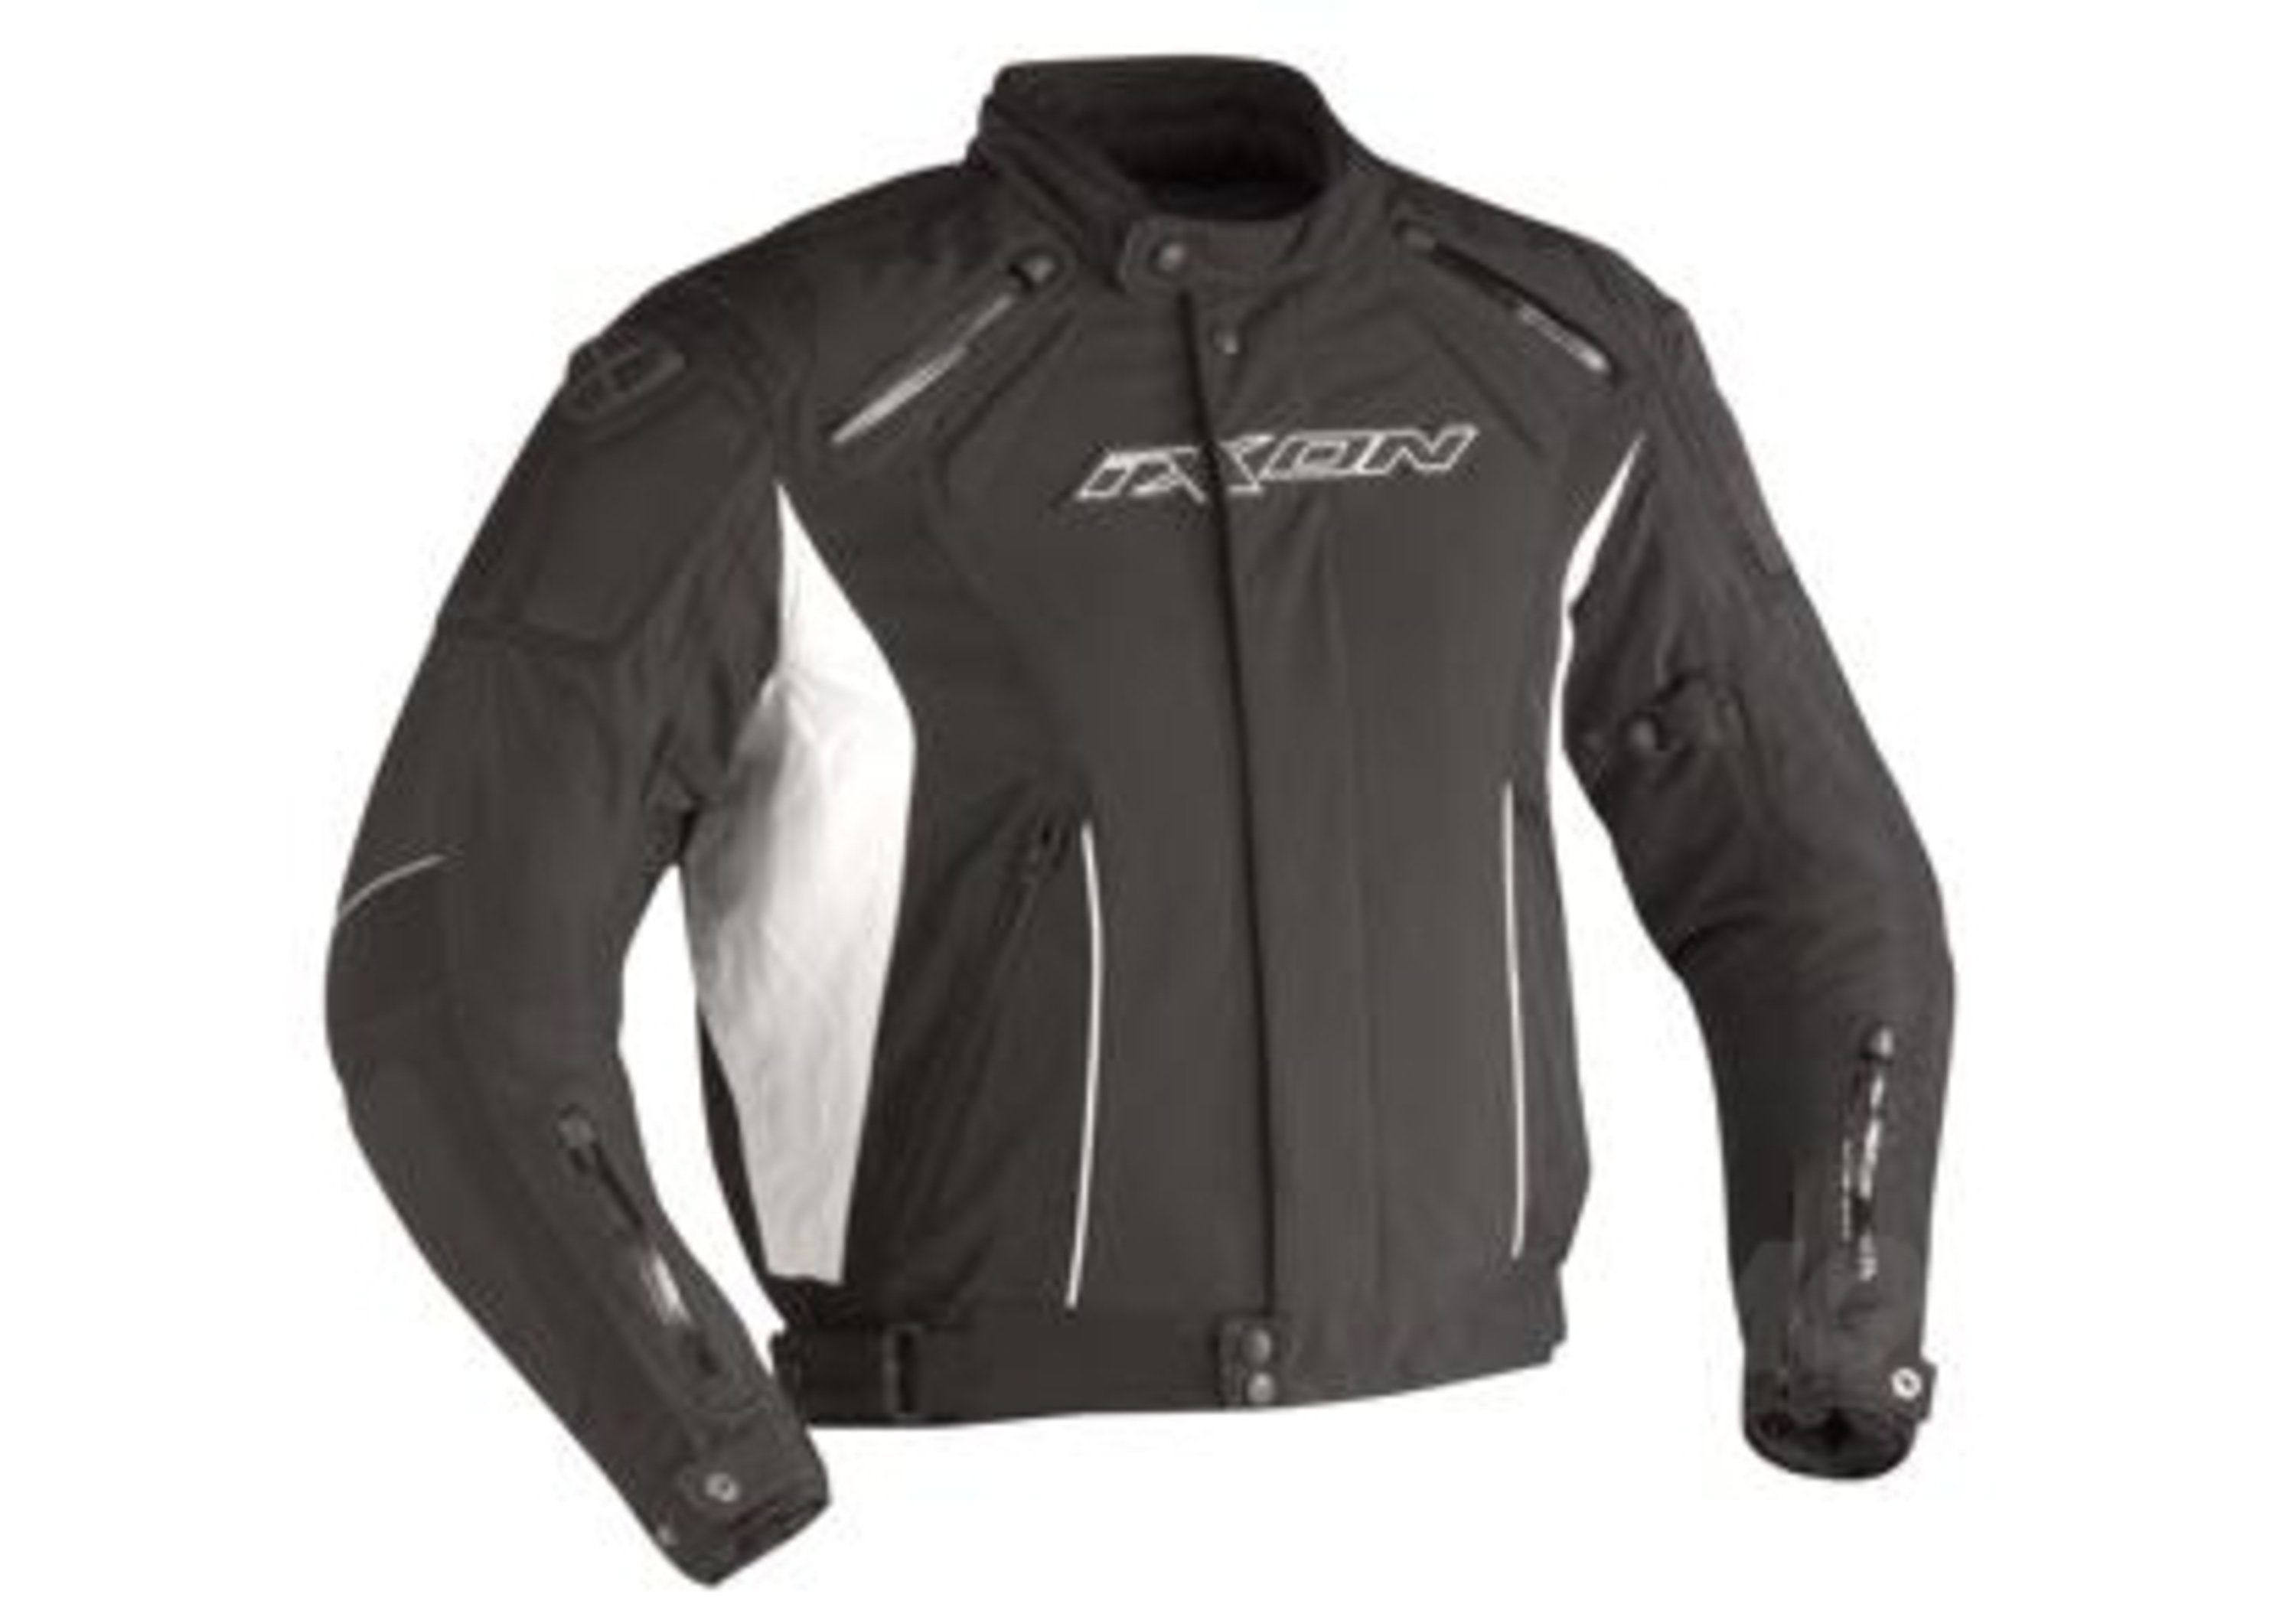 Ixon Granit, la giacca Racing, Sportiva e conveniente